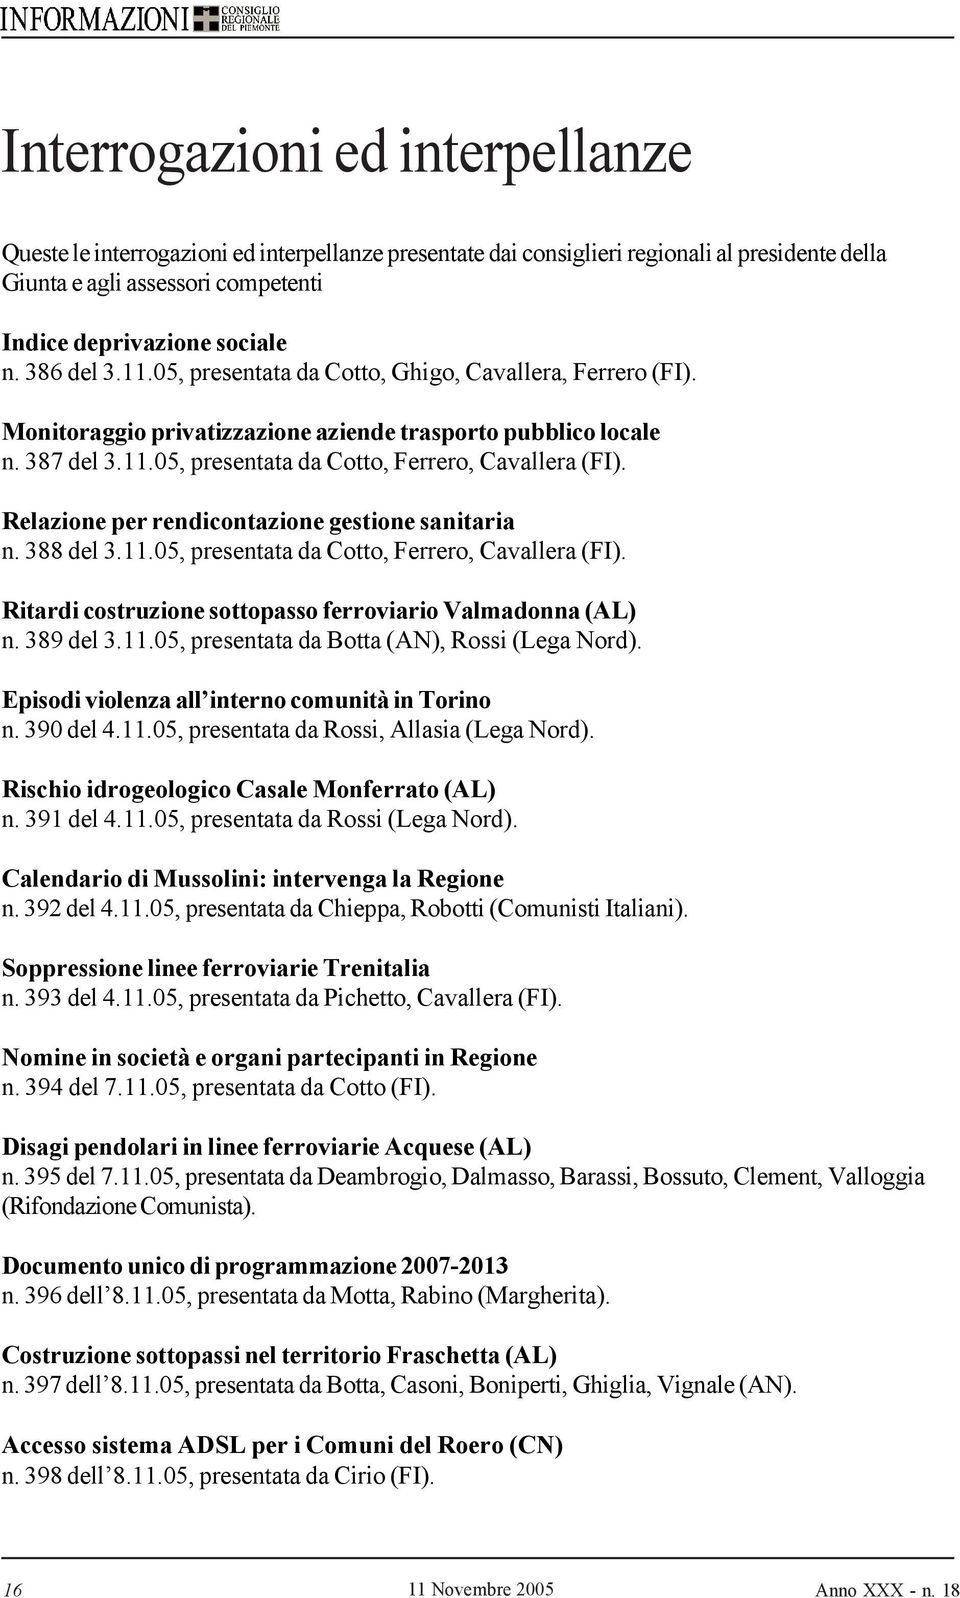 Relazione per rendicontazione gestione sanitaria n. 388 del 3.11.05, presentata da Cotto, Ferrero, Cavallera (FI). Ritardi costruzione sottopasso ferroviario Valmadonna (AL) n. 389 del 3.11.05, presentata da Botta (AN), Rossi (Lega Nord).